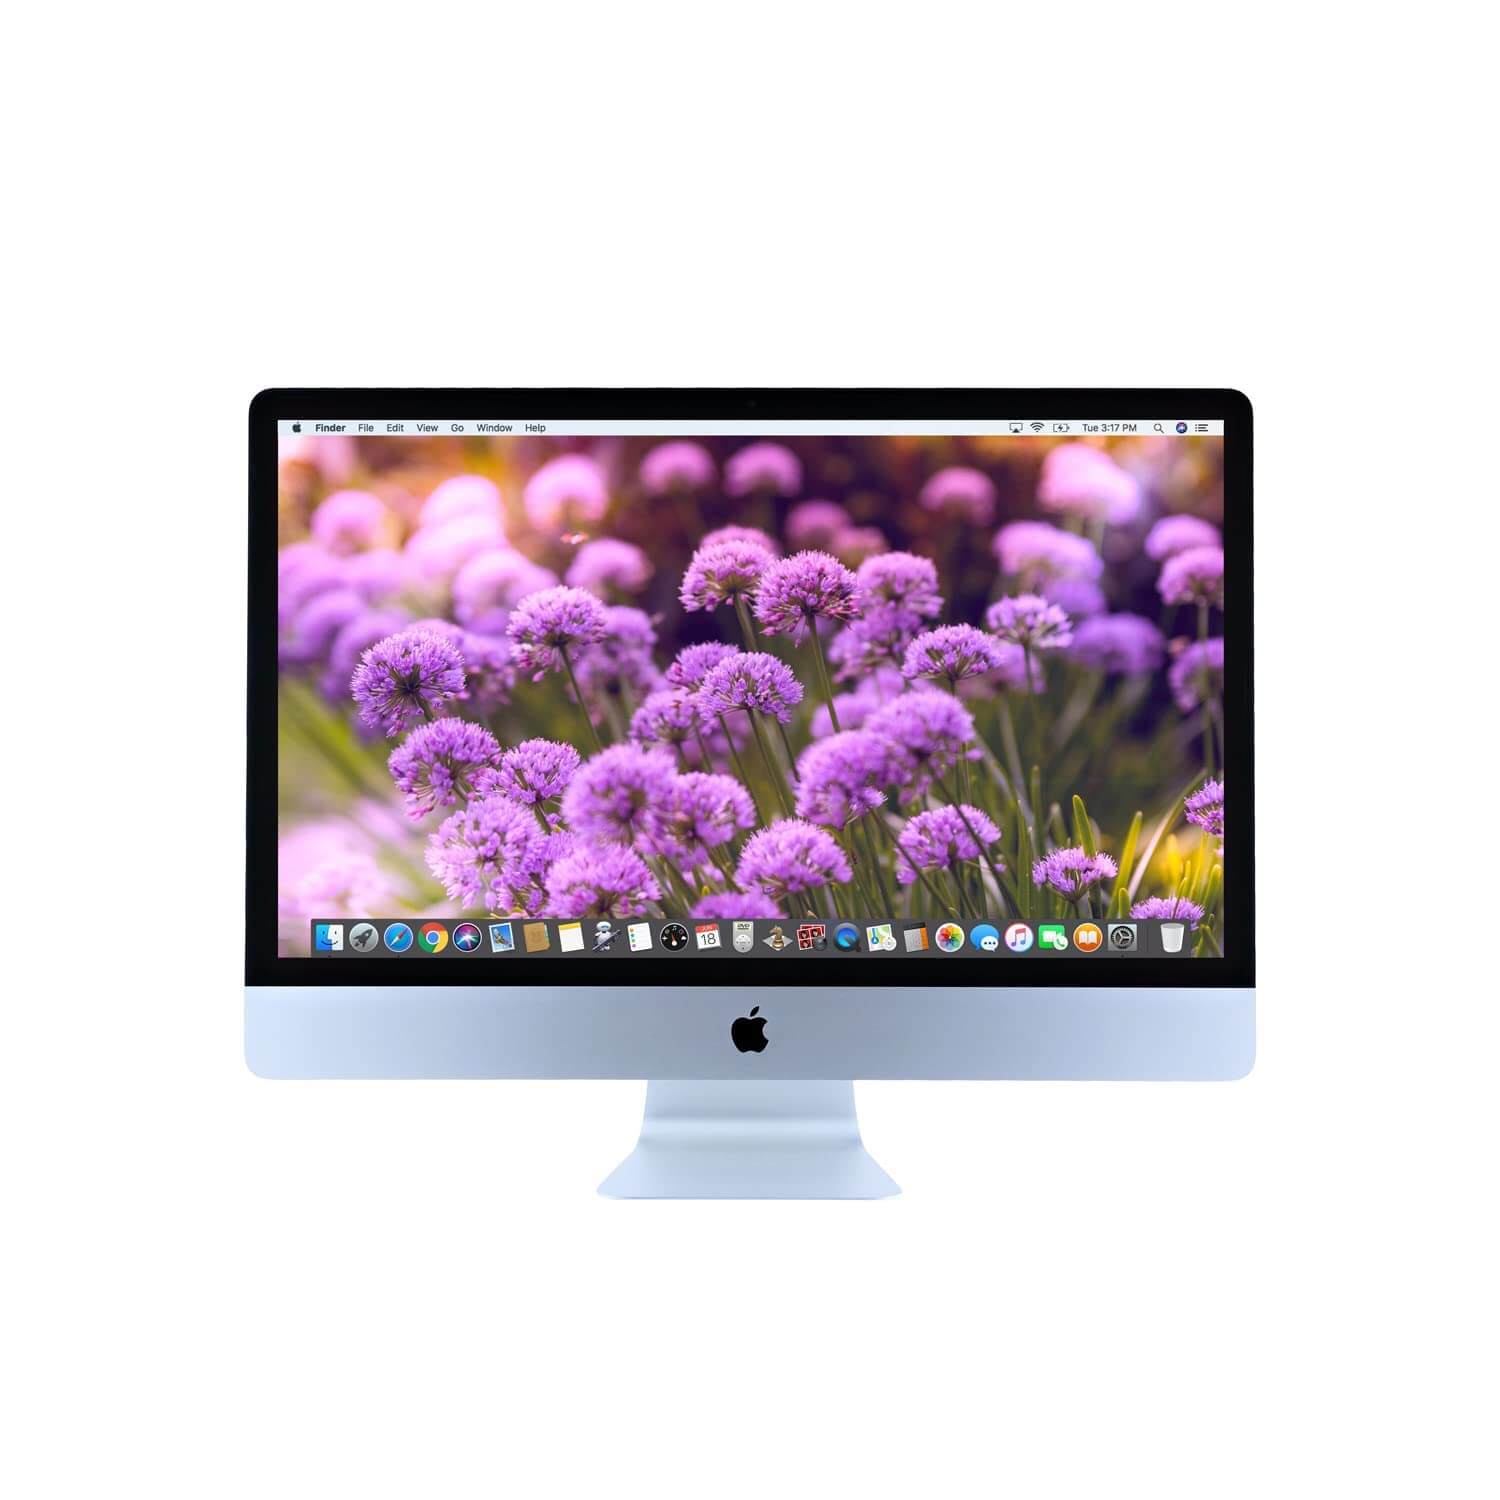 Apple iMac 21.5 in 2.7GHz Core i5 All In One Desktop